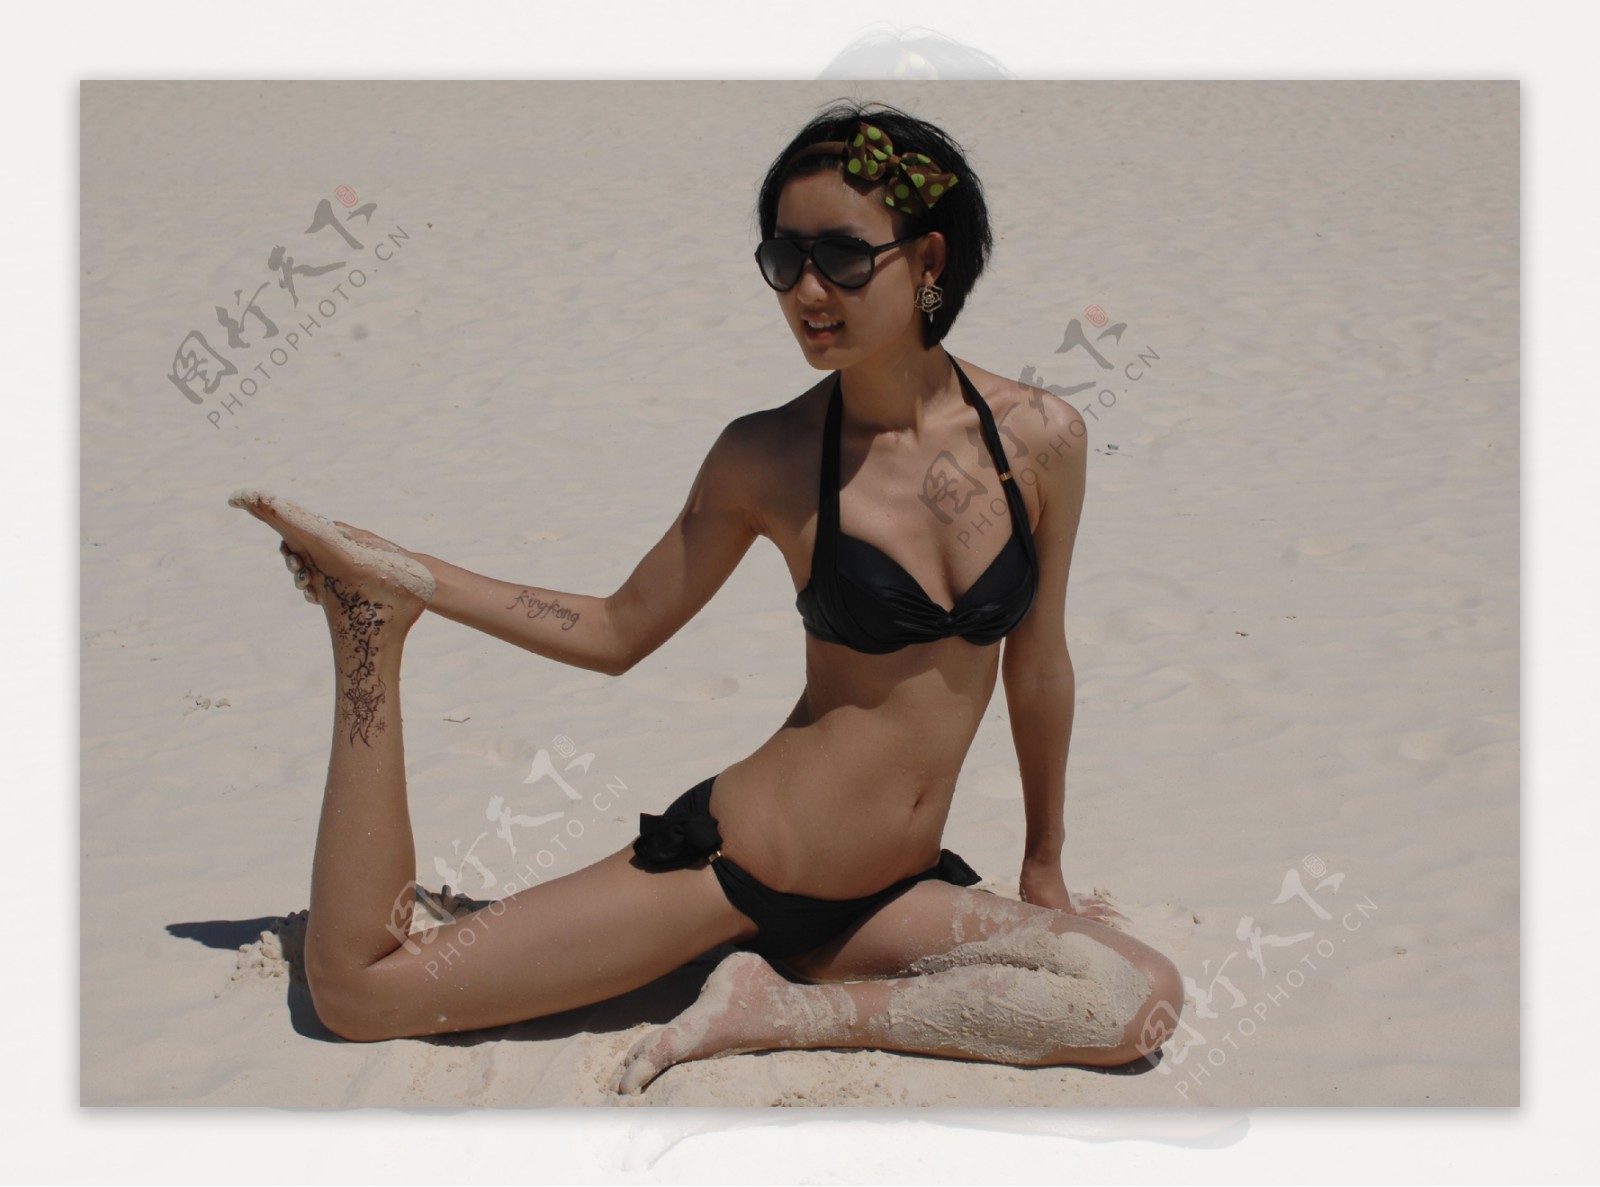 孔斯2010年菲律宾长滩岛度假黑色泳装图片